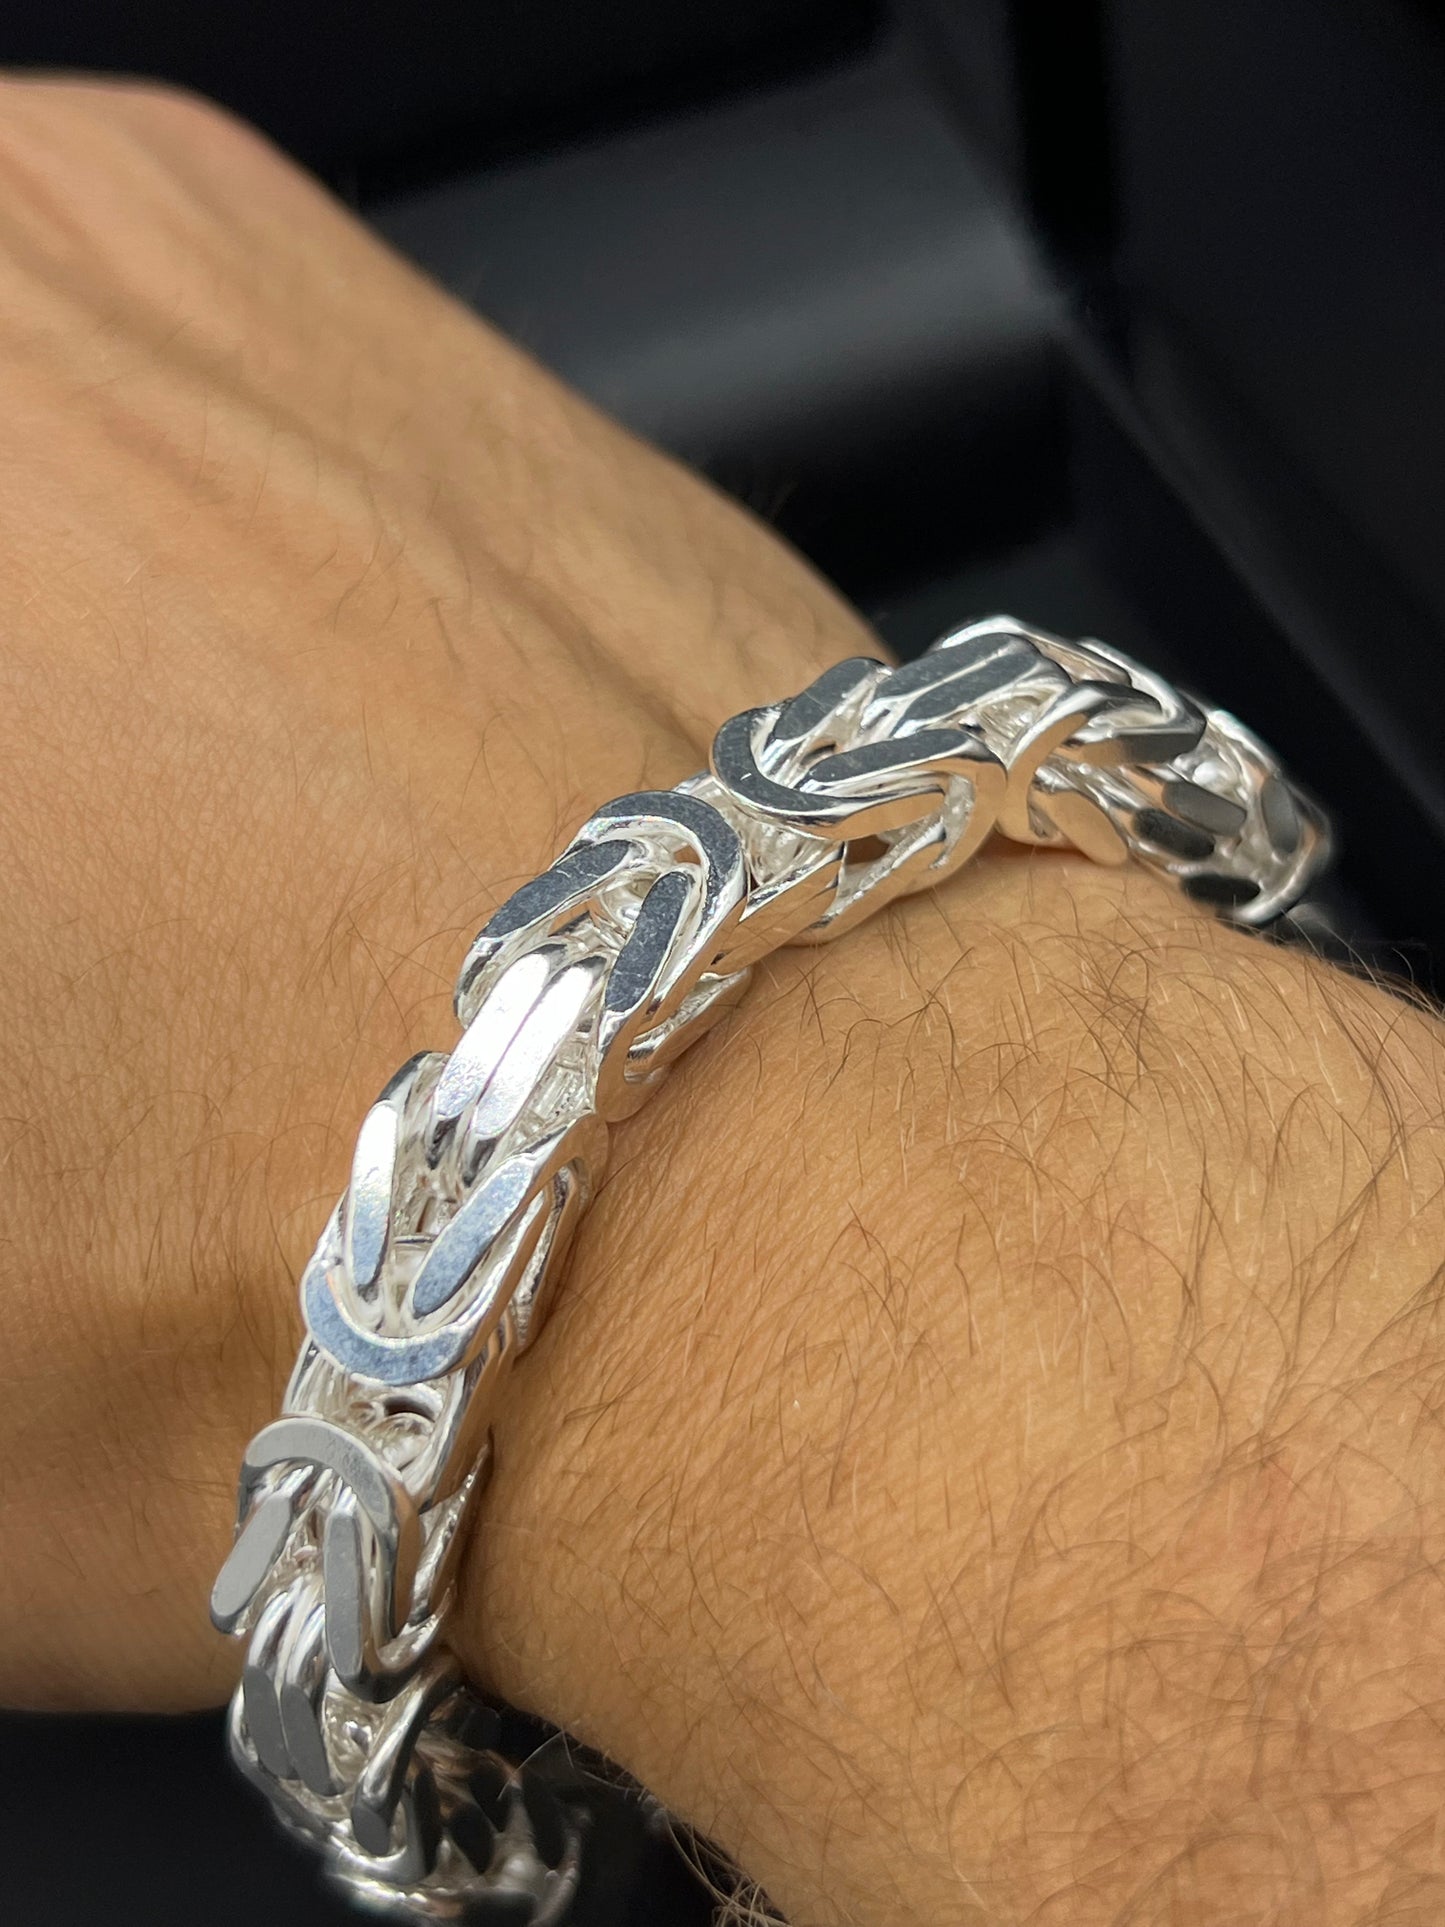 Byzantine Bracelet 10mm - 925 Silver